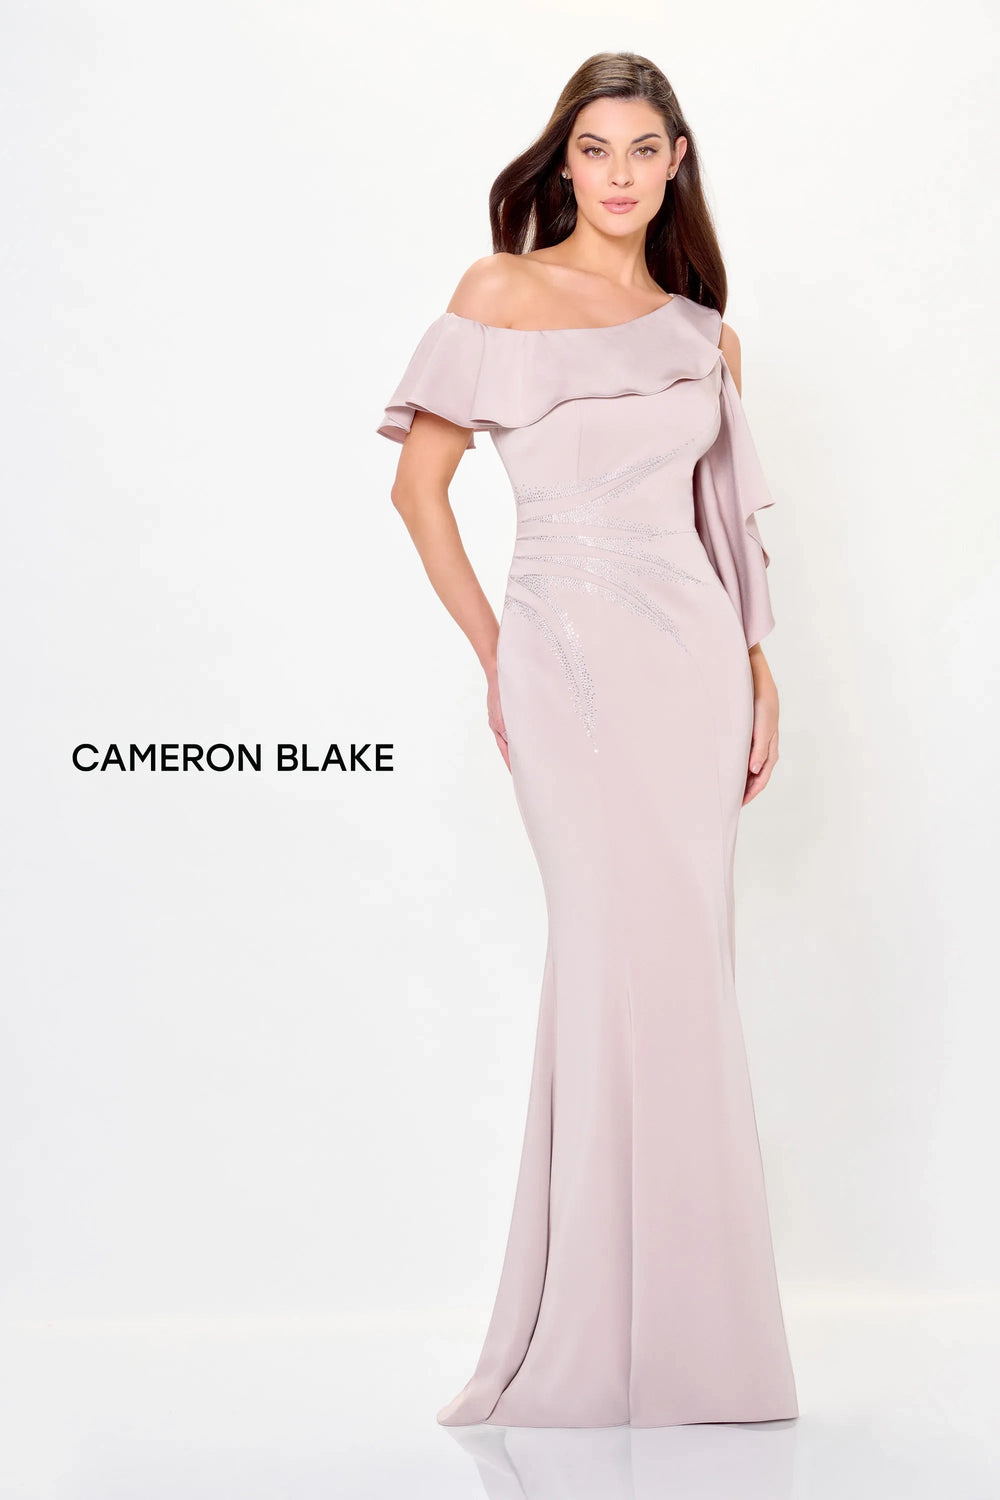 Mon Cheri Cameron Blake Dress Mon Cheri Cameron Blake CB3237 Dress